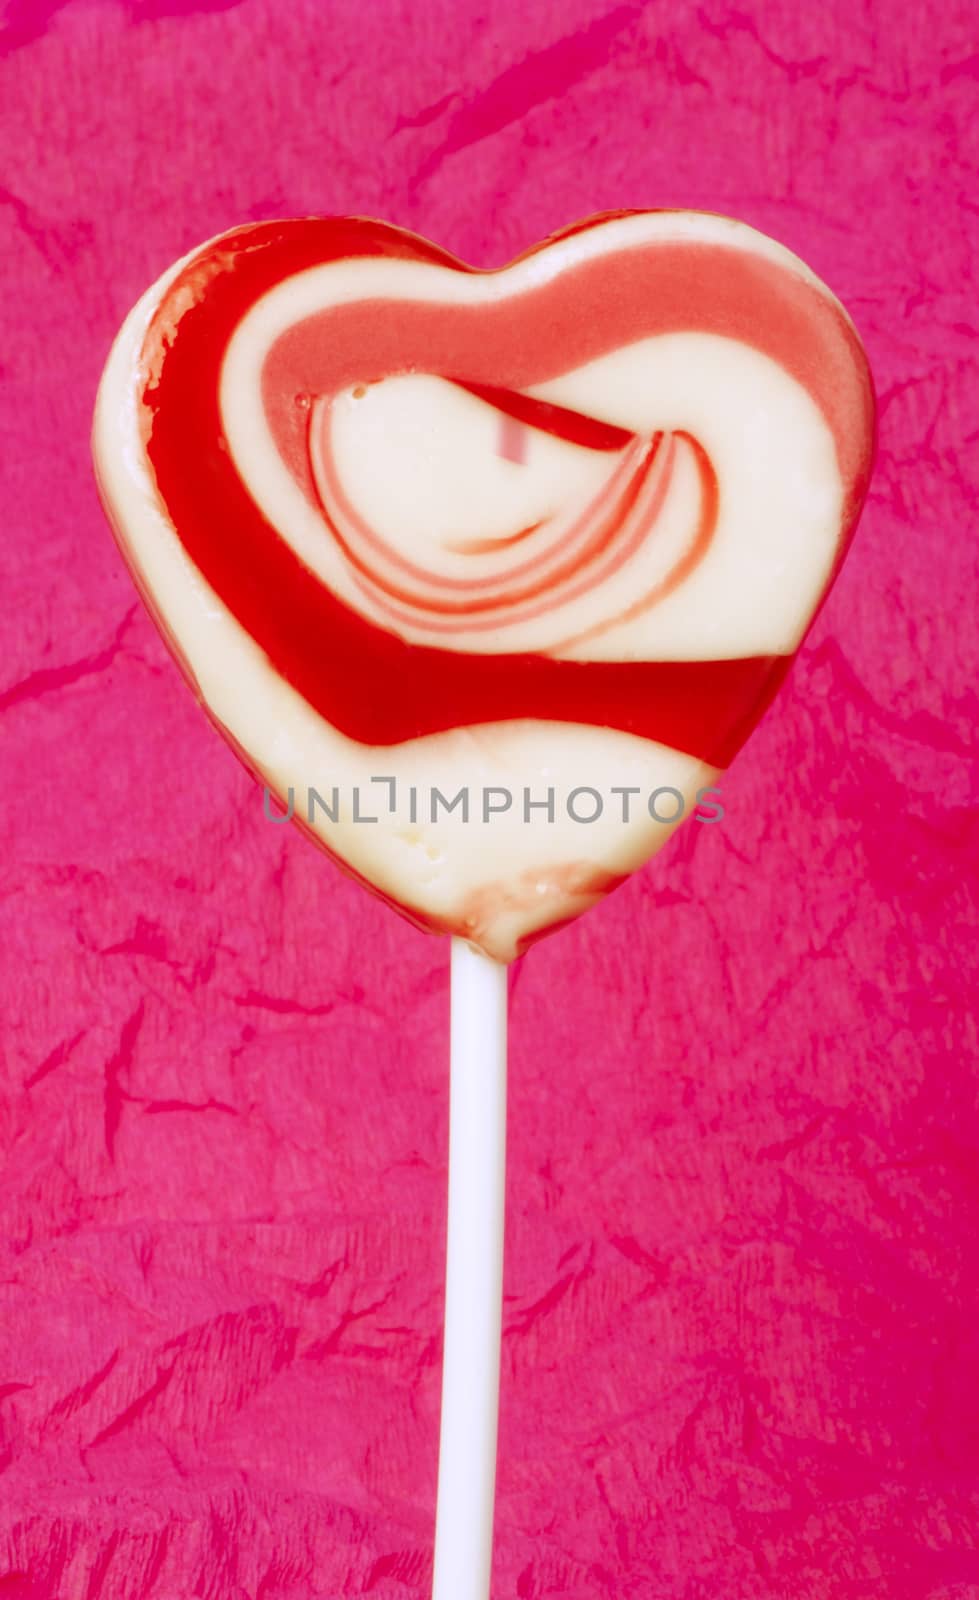 Pink lollipop heart-shaped by deyan_georgiev